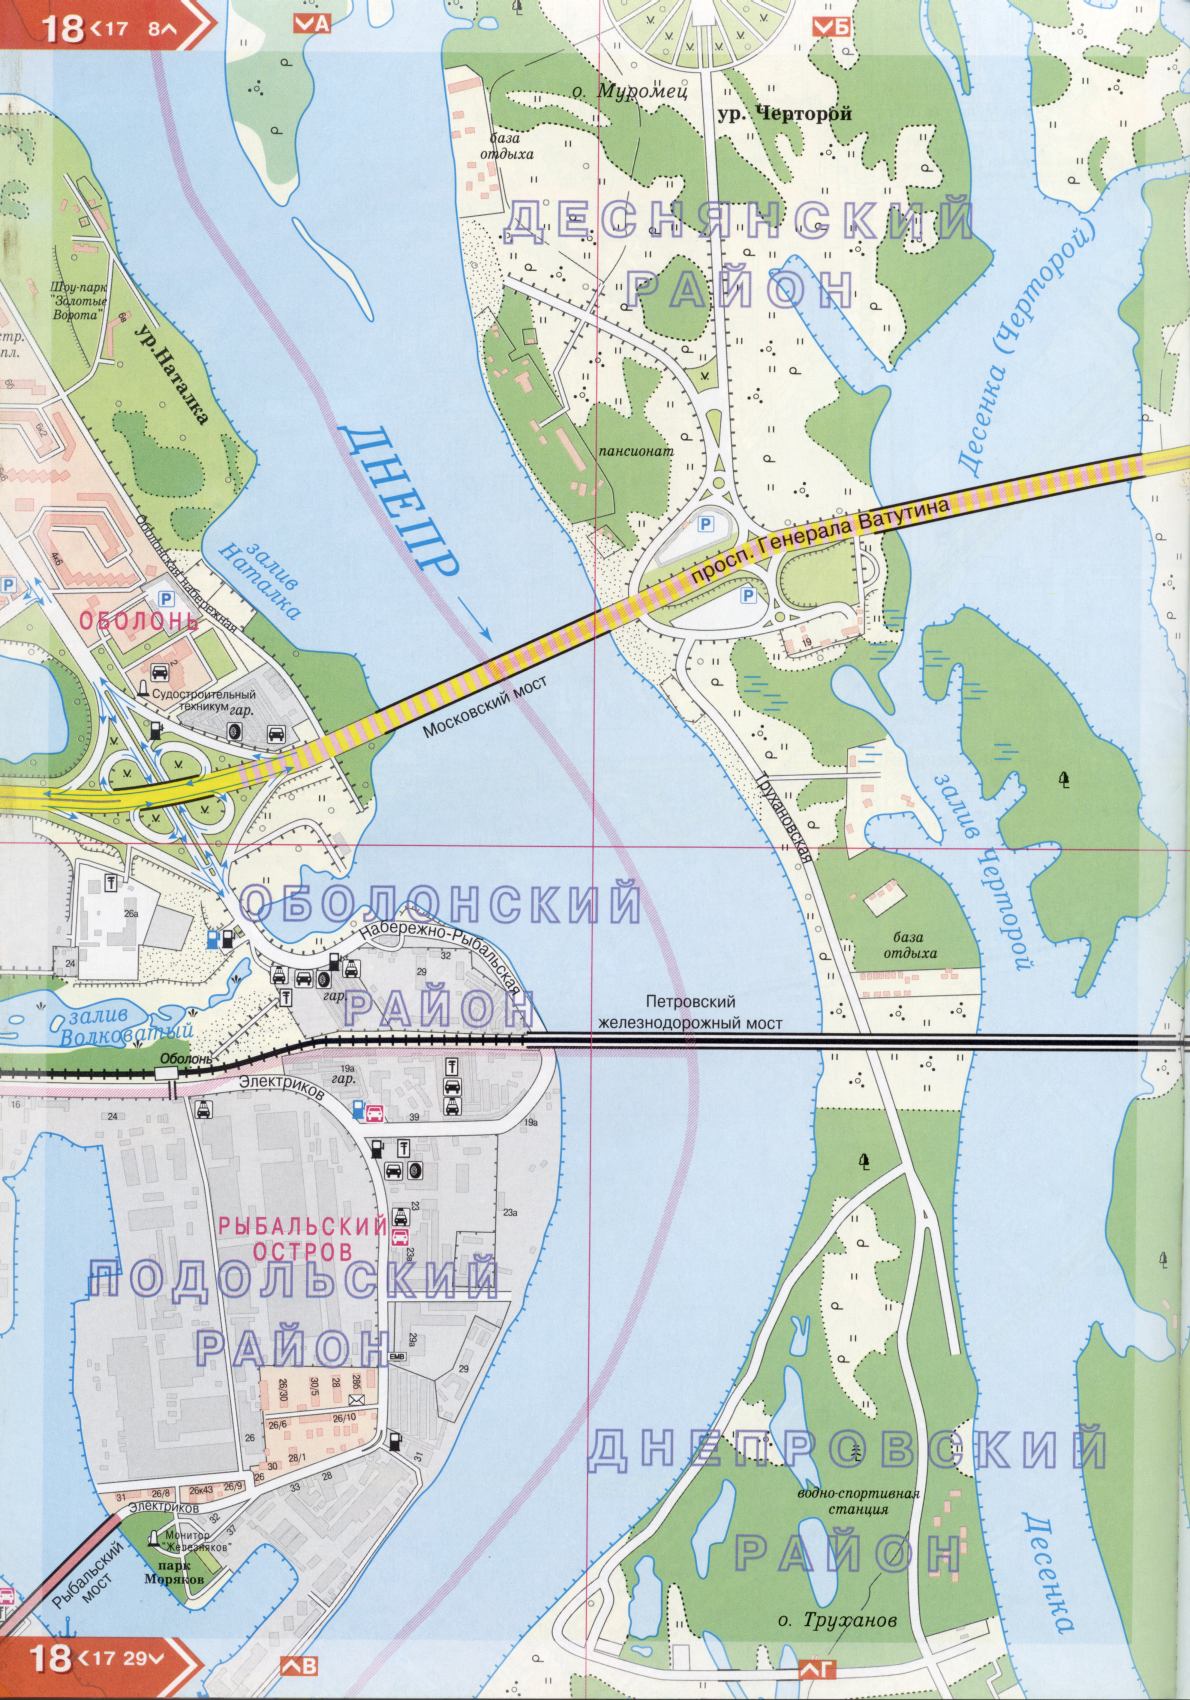 Kiev carte détails 1cm = 150m pour 45 feuilles. Carte de Kiev de l'atlas des routes. Télécharger une carte détaillée, F1